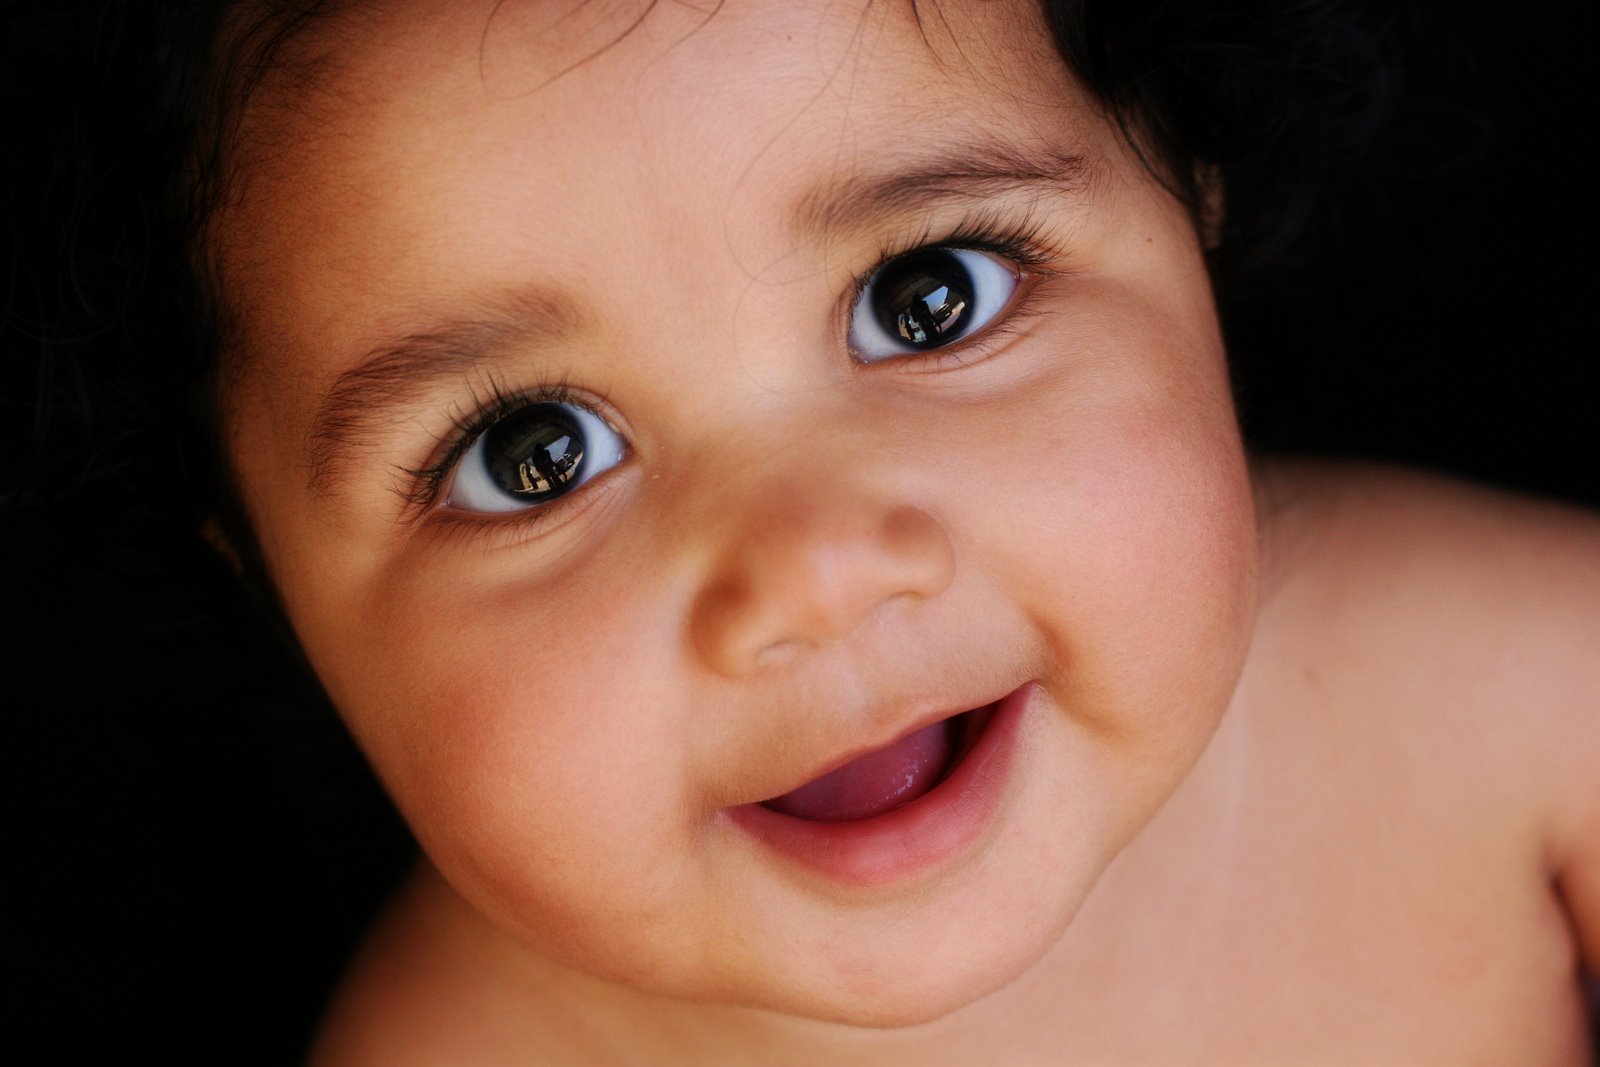 [Baby+face,+fotoshpd+by+ltm.jpg]